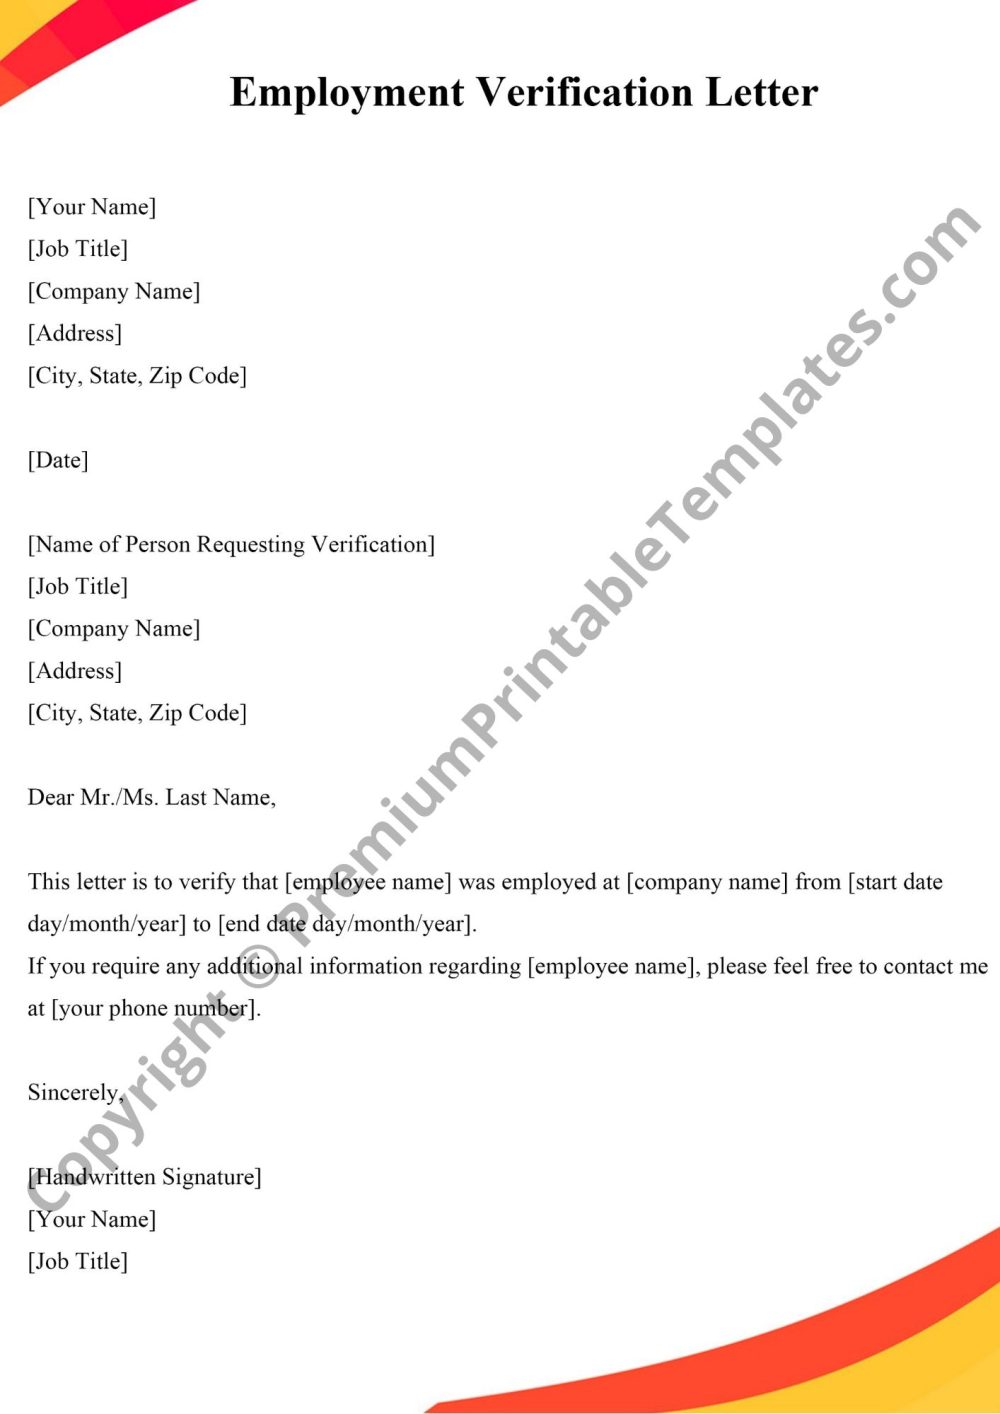 Employment Verification Letter PDF